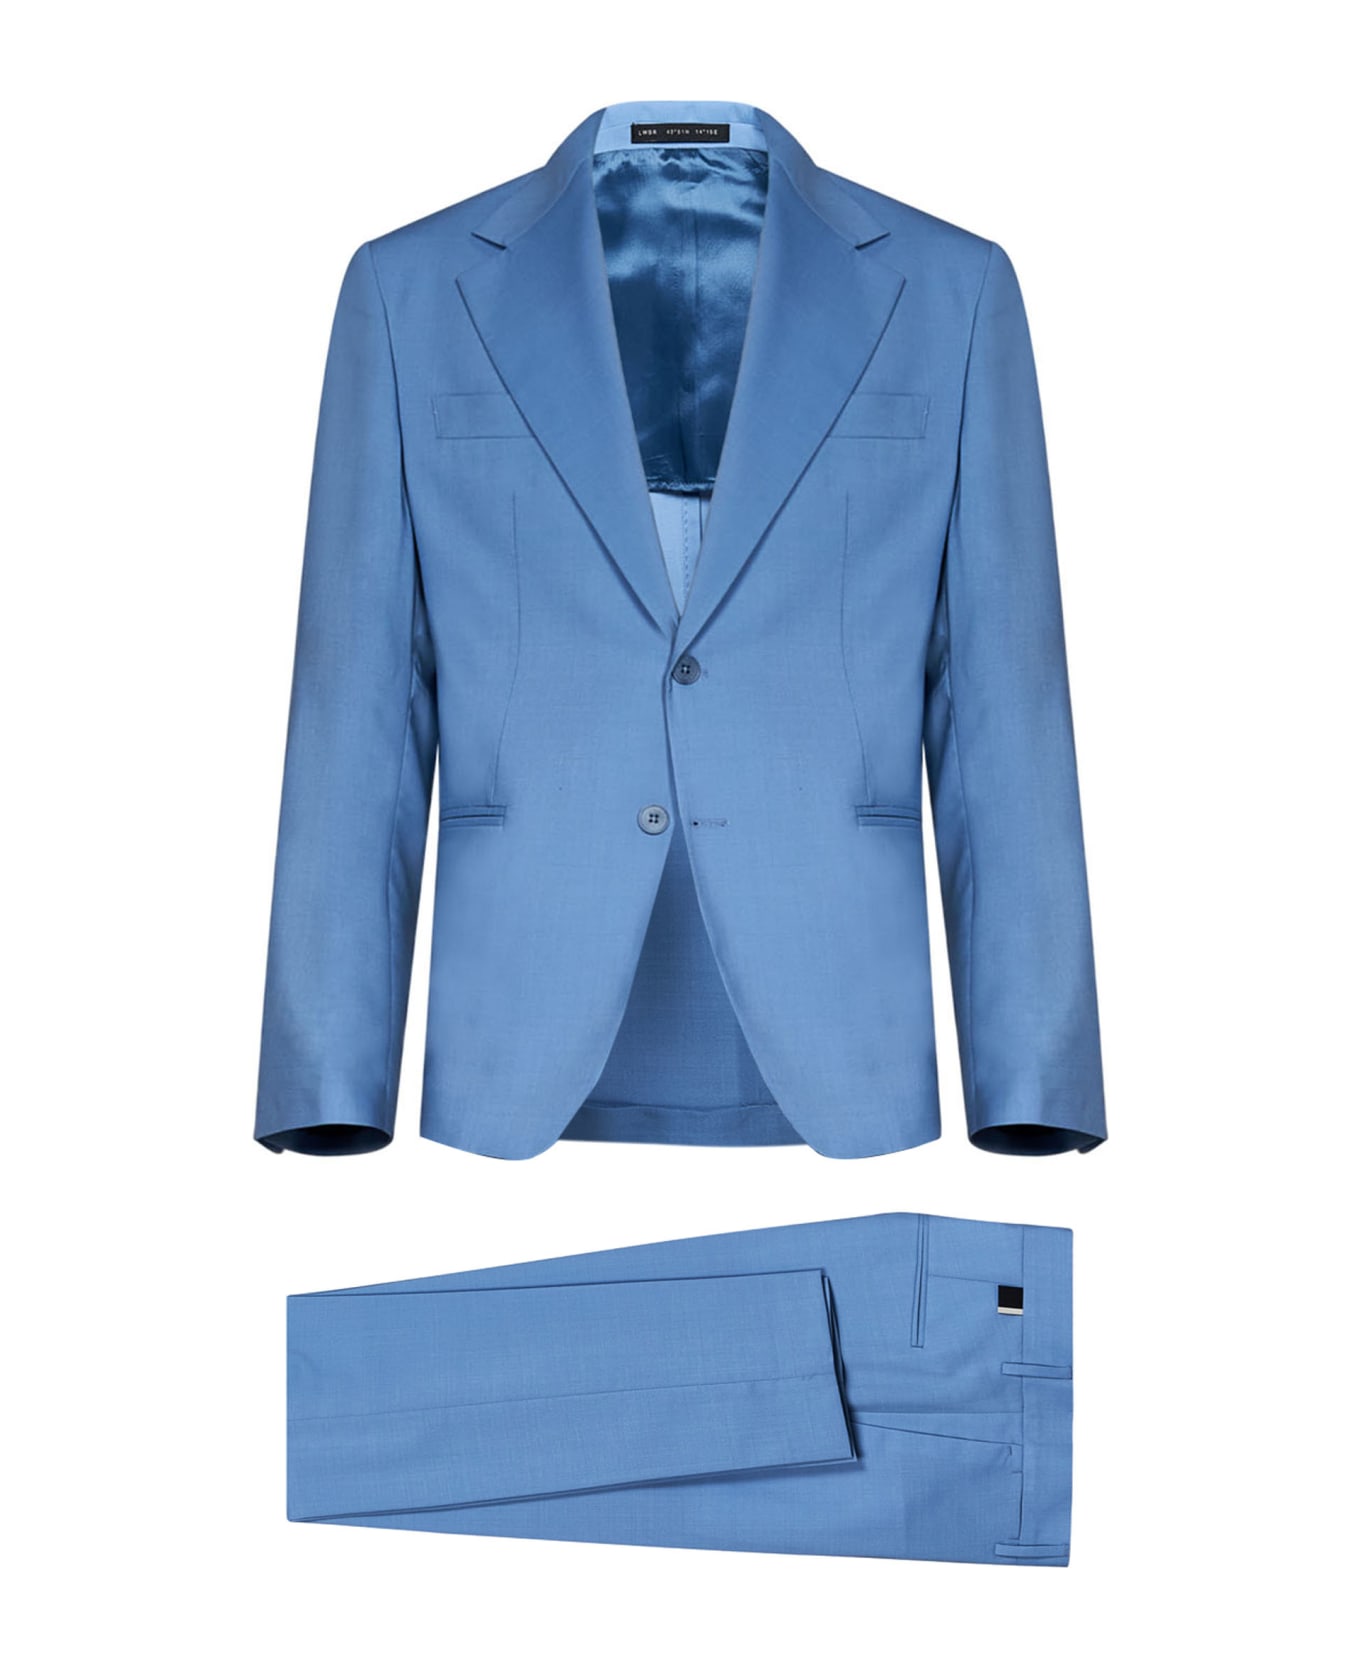 Low Brand Suit - Light blue